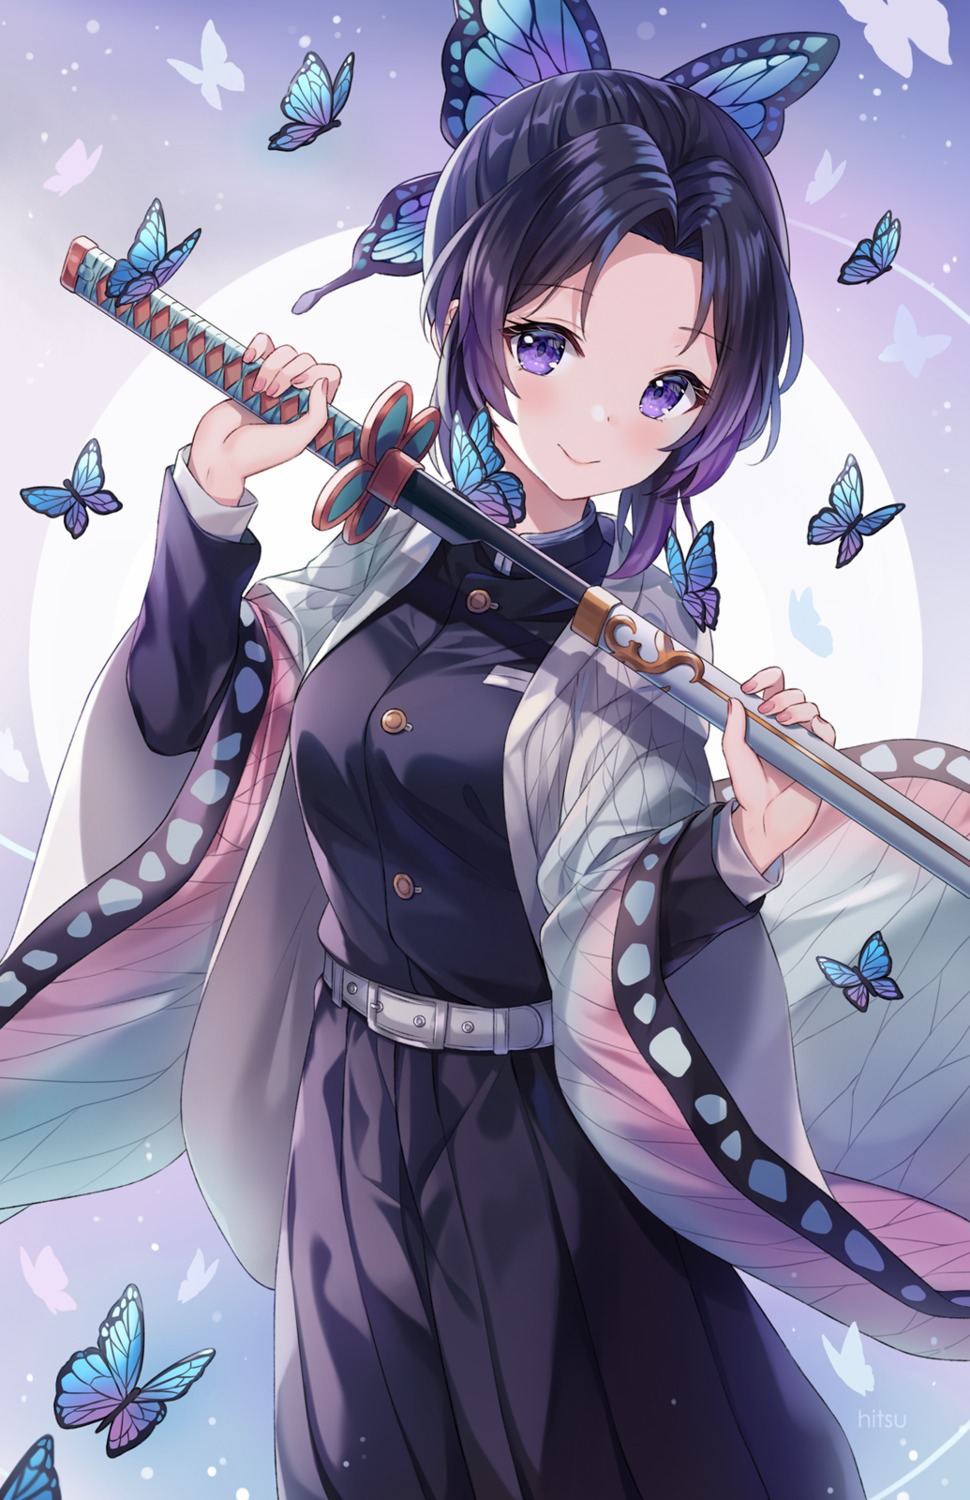 hitsukuya japanese_clothes kimetsu_no_yaiba kochou_shinobu sword uniform